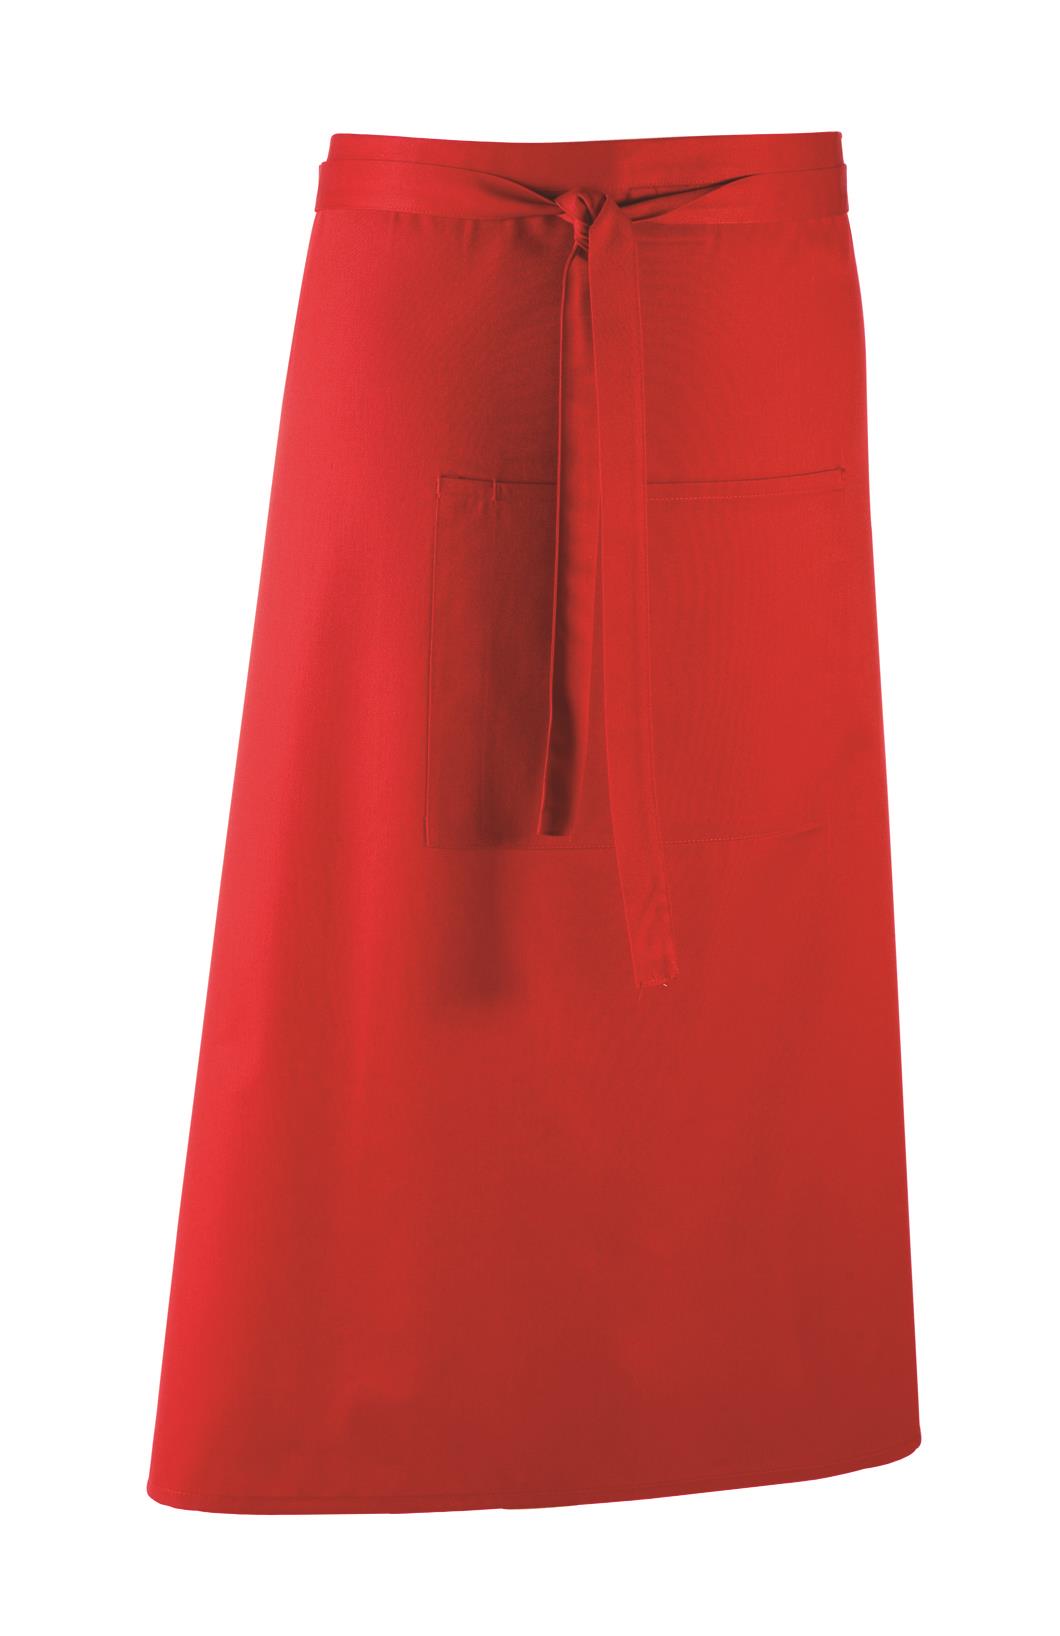 Colours Bistro Apron 90 x 80 cm Premier® Red (Pantone 200)